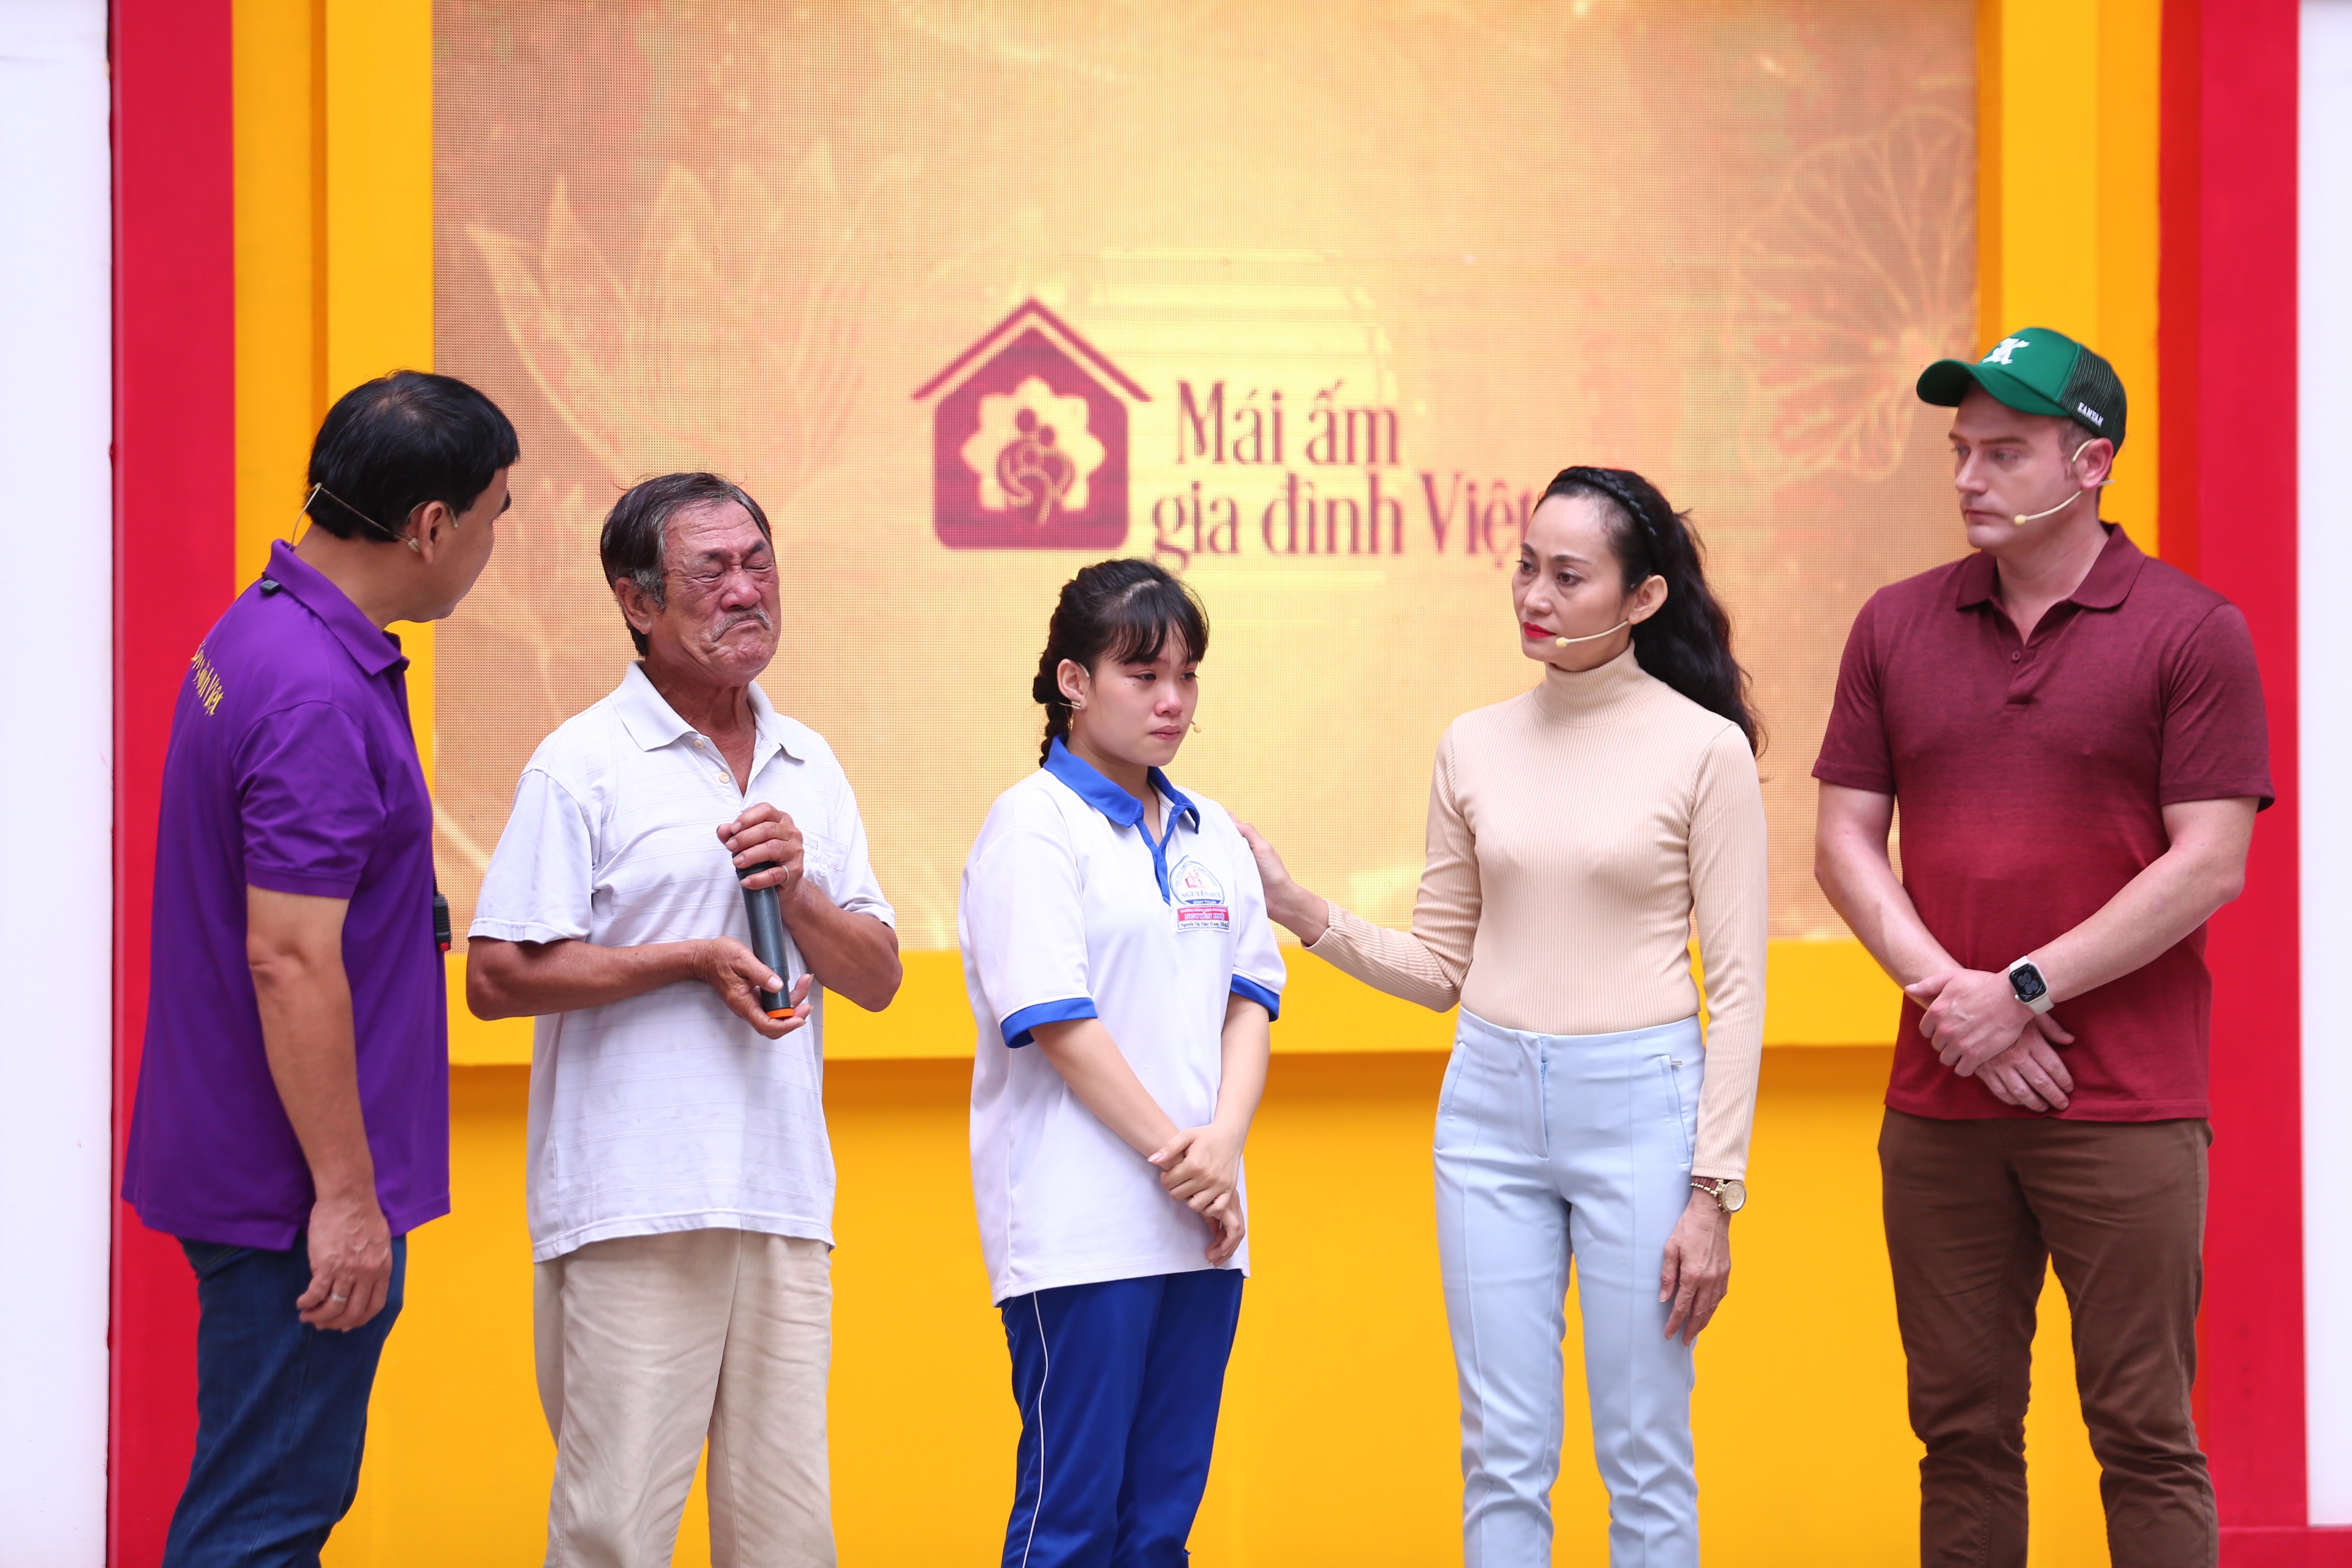 Quá thương xót cho hoàn cảnh cháu gái của mình, ông ngoại bé Thùy Trang liên tục bật khóc trong suốt chương trình 